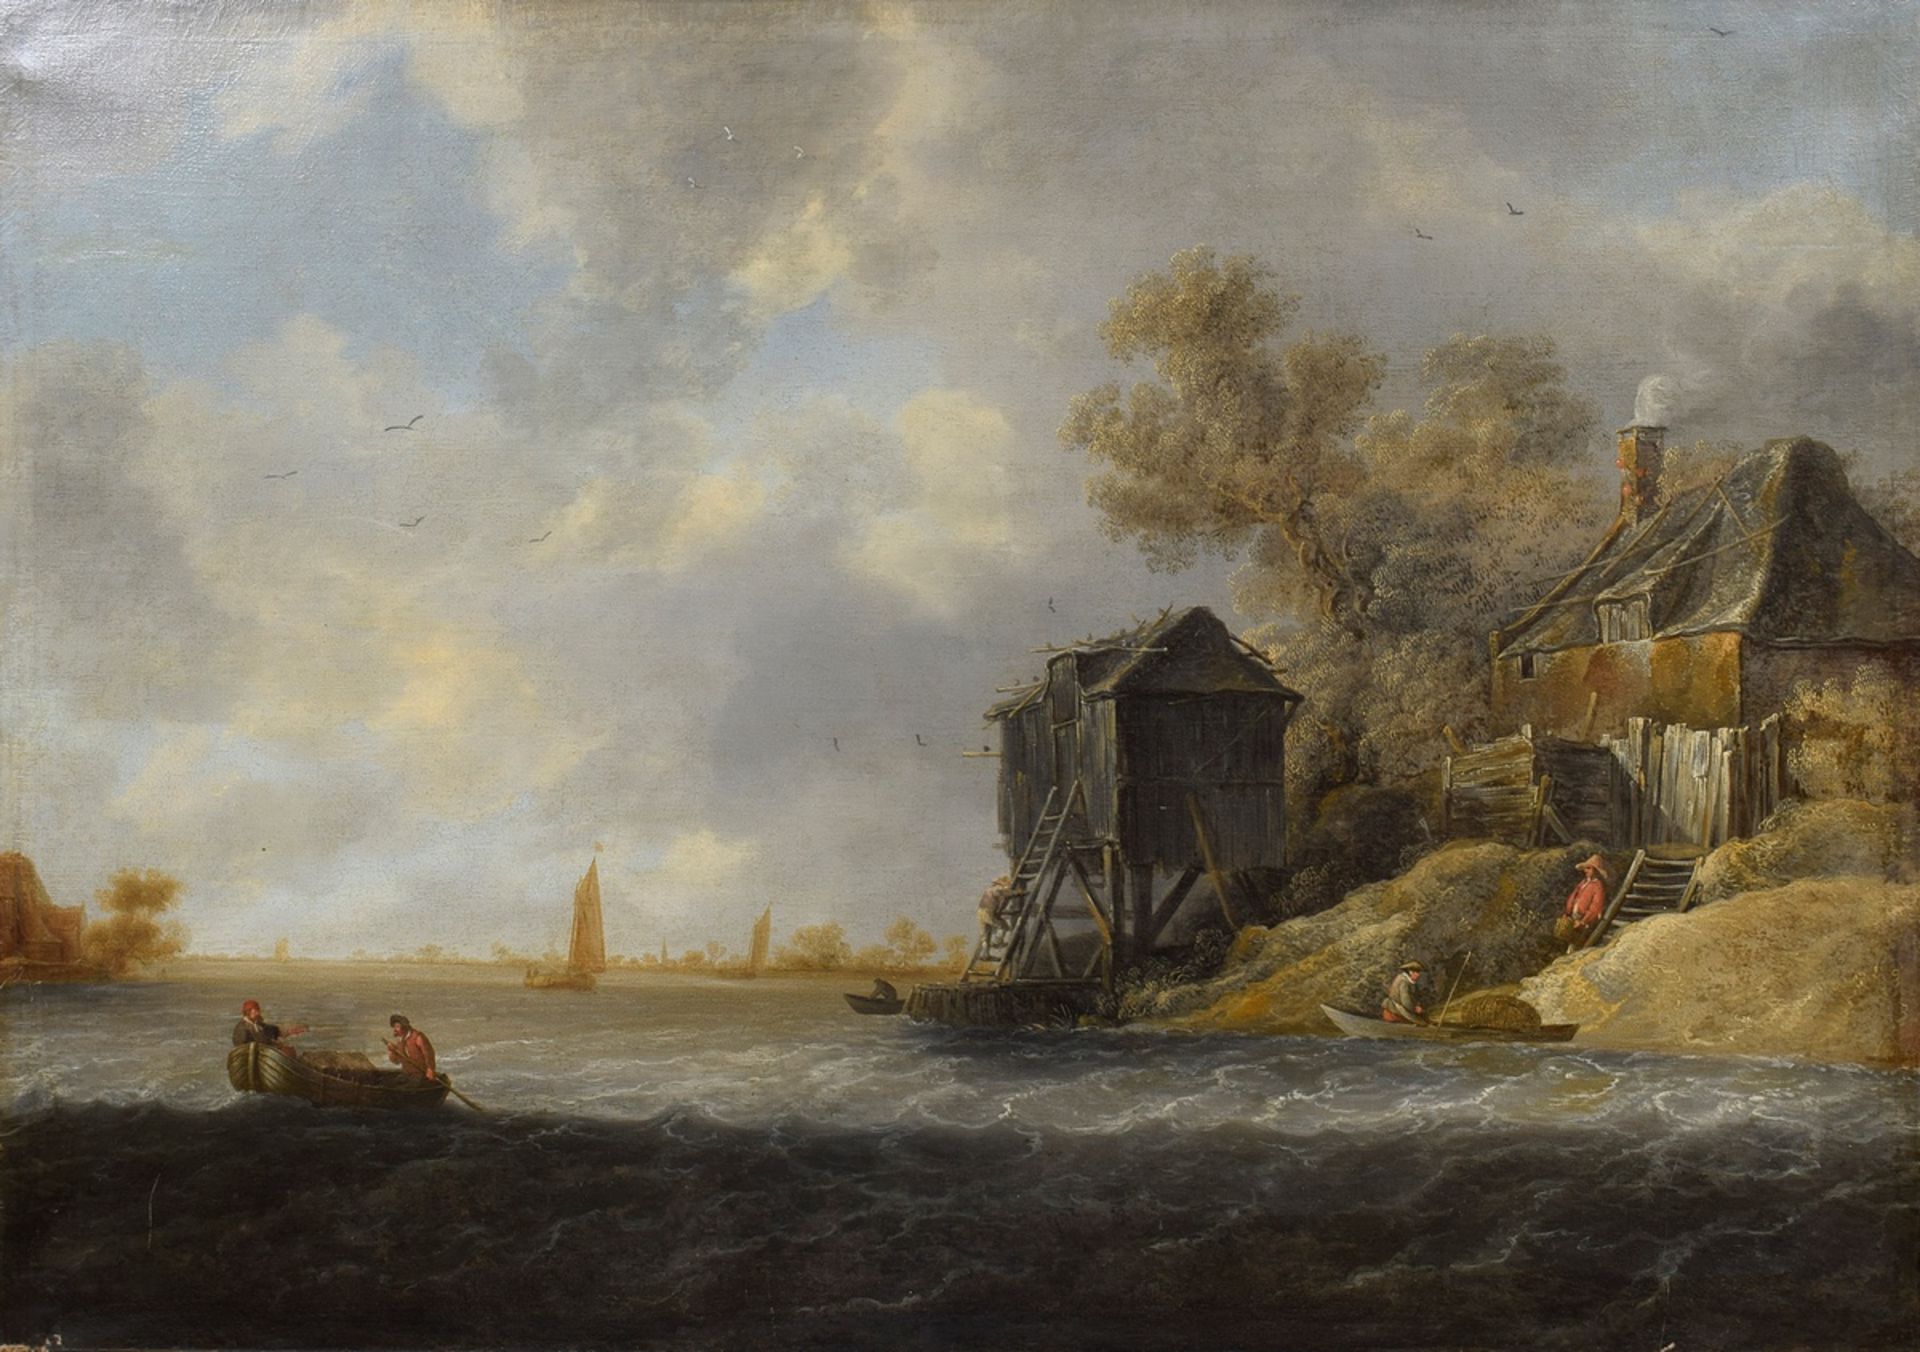 Coelenbier, Jan (c. 1610- c. 1680) succession "River Landscape with Fishermen's Cottage", oil/canva